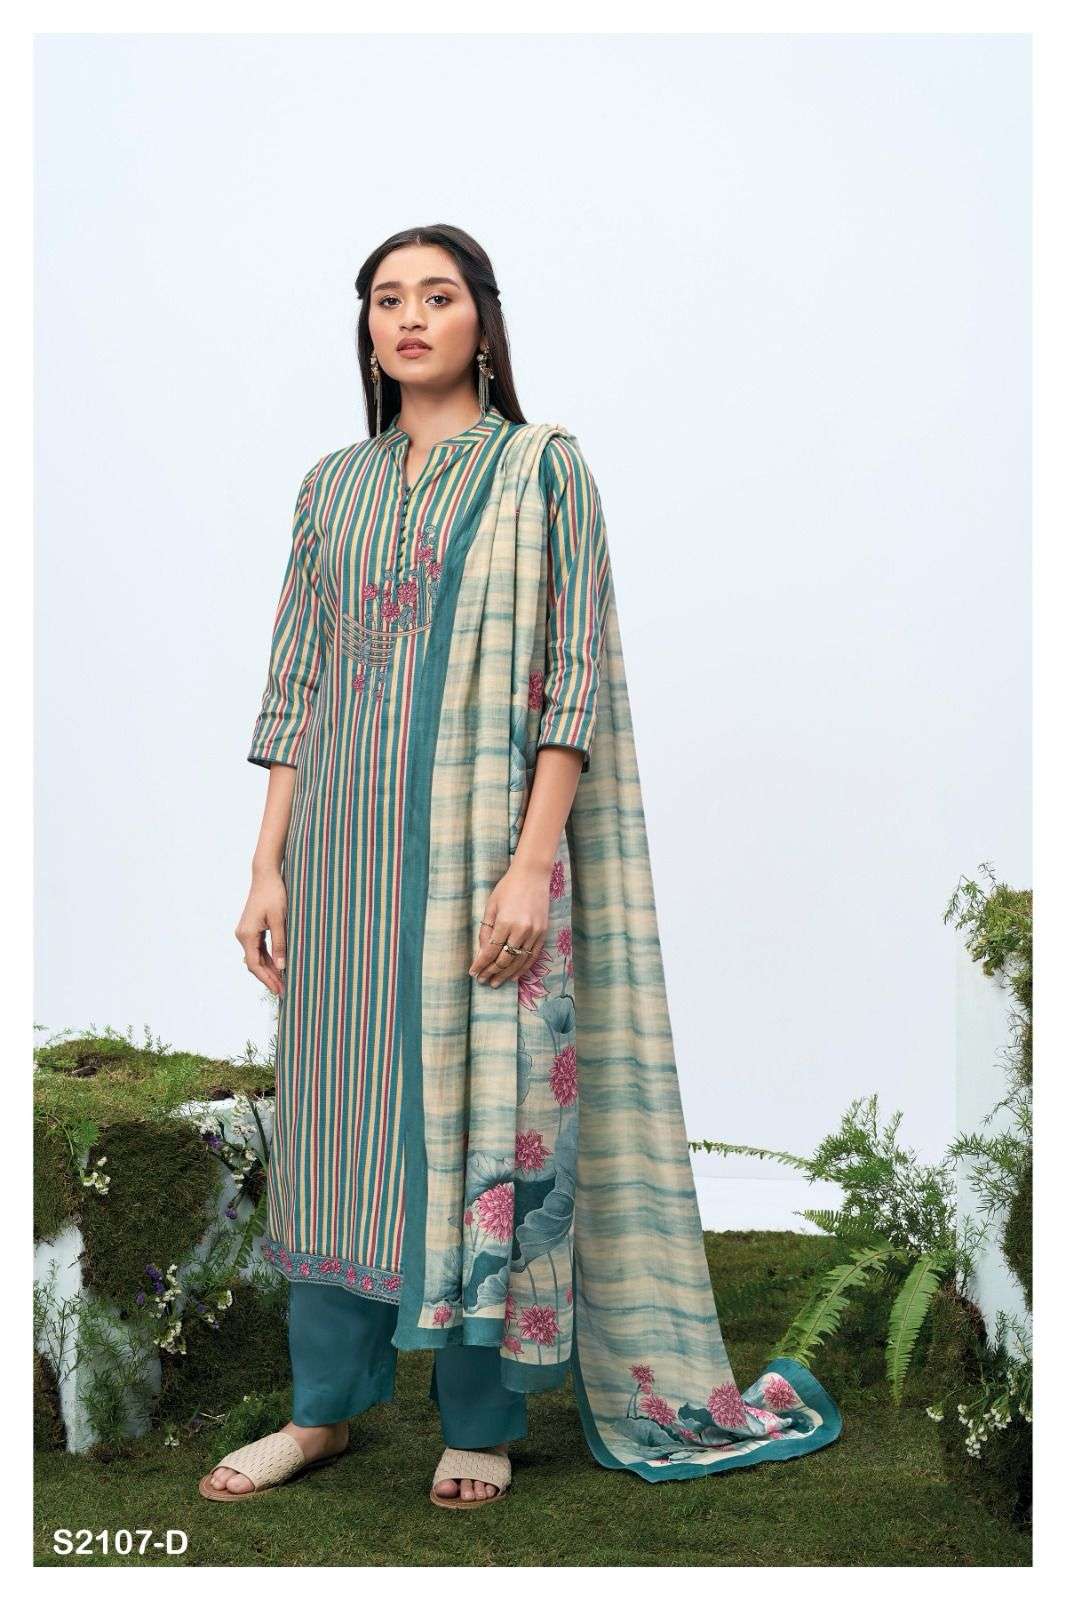 ganga jill 2107 colour series designer  pakistani salwar kameez wholesaler surat gujarat